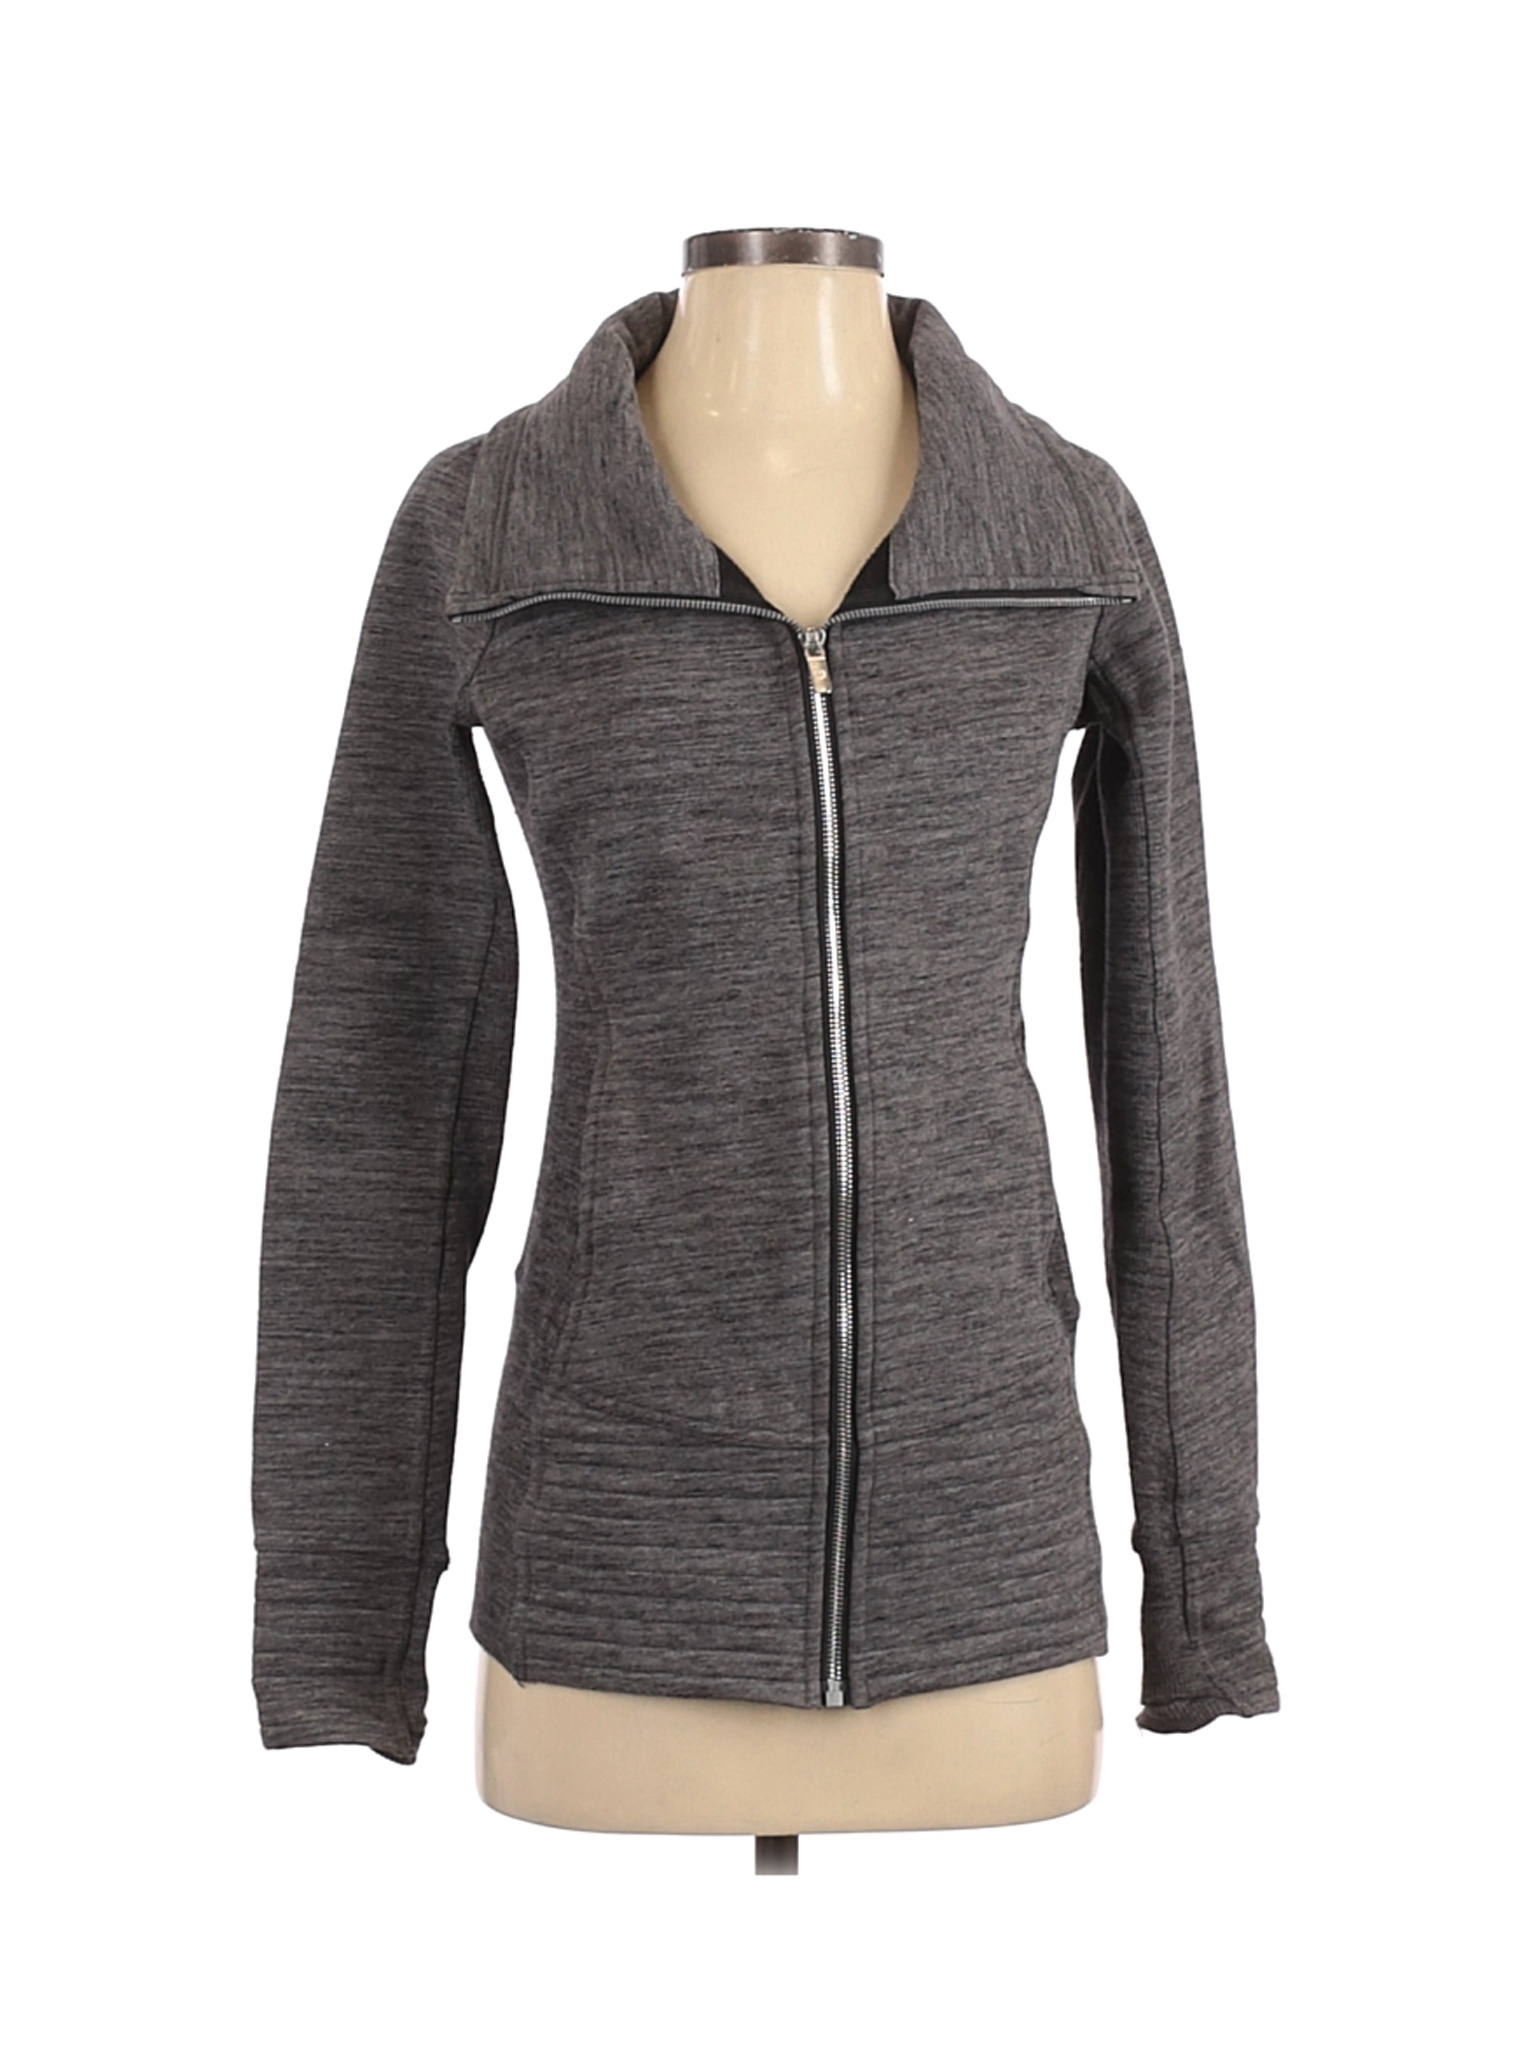 lululemon women's jackets ebay